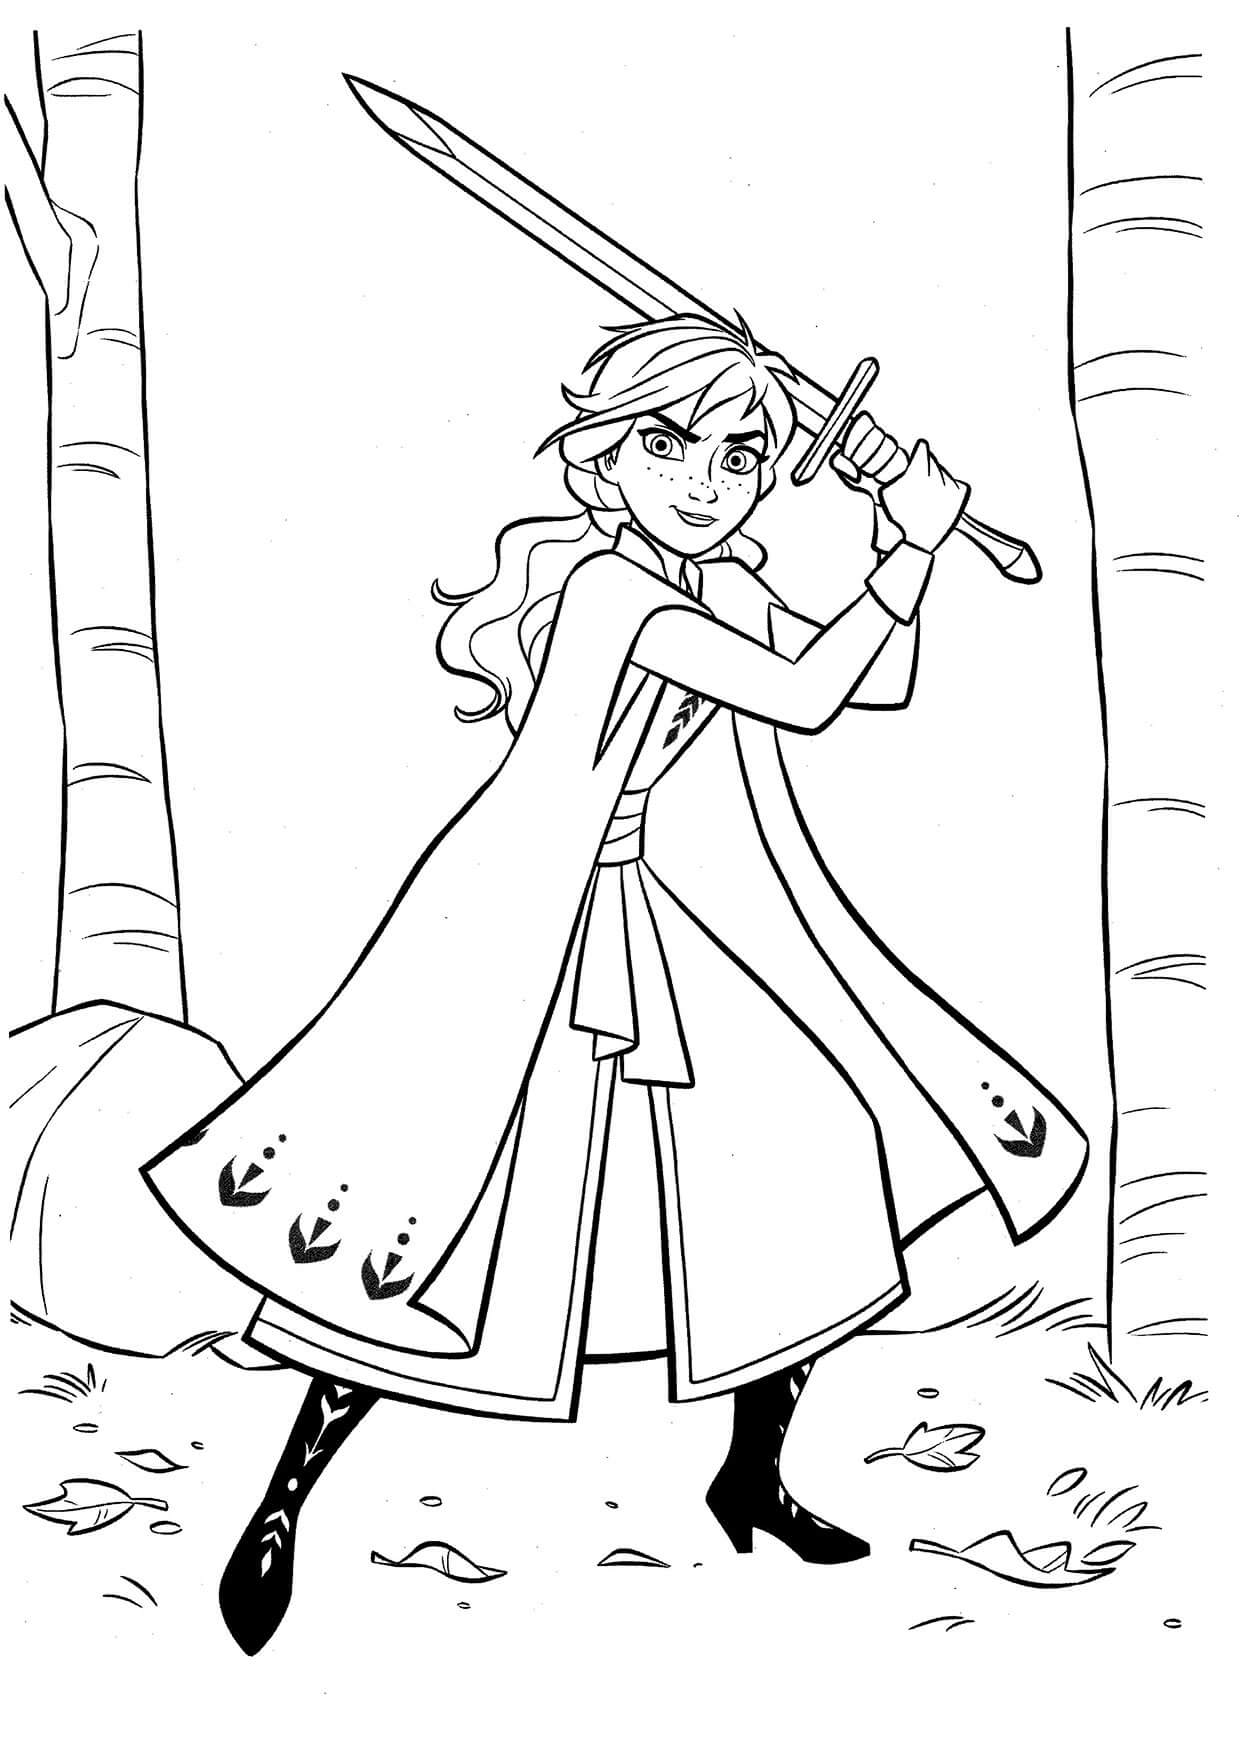 Anna houdt zwaard vast